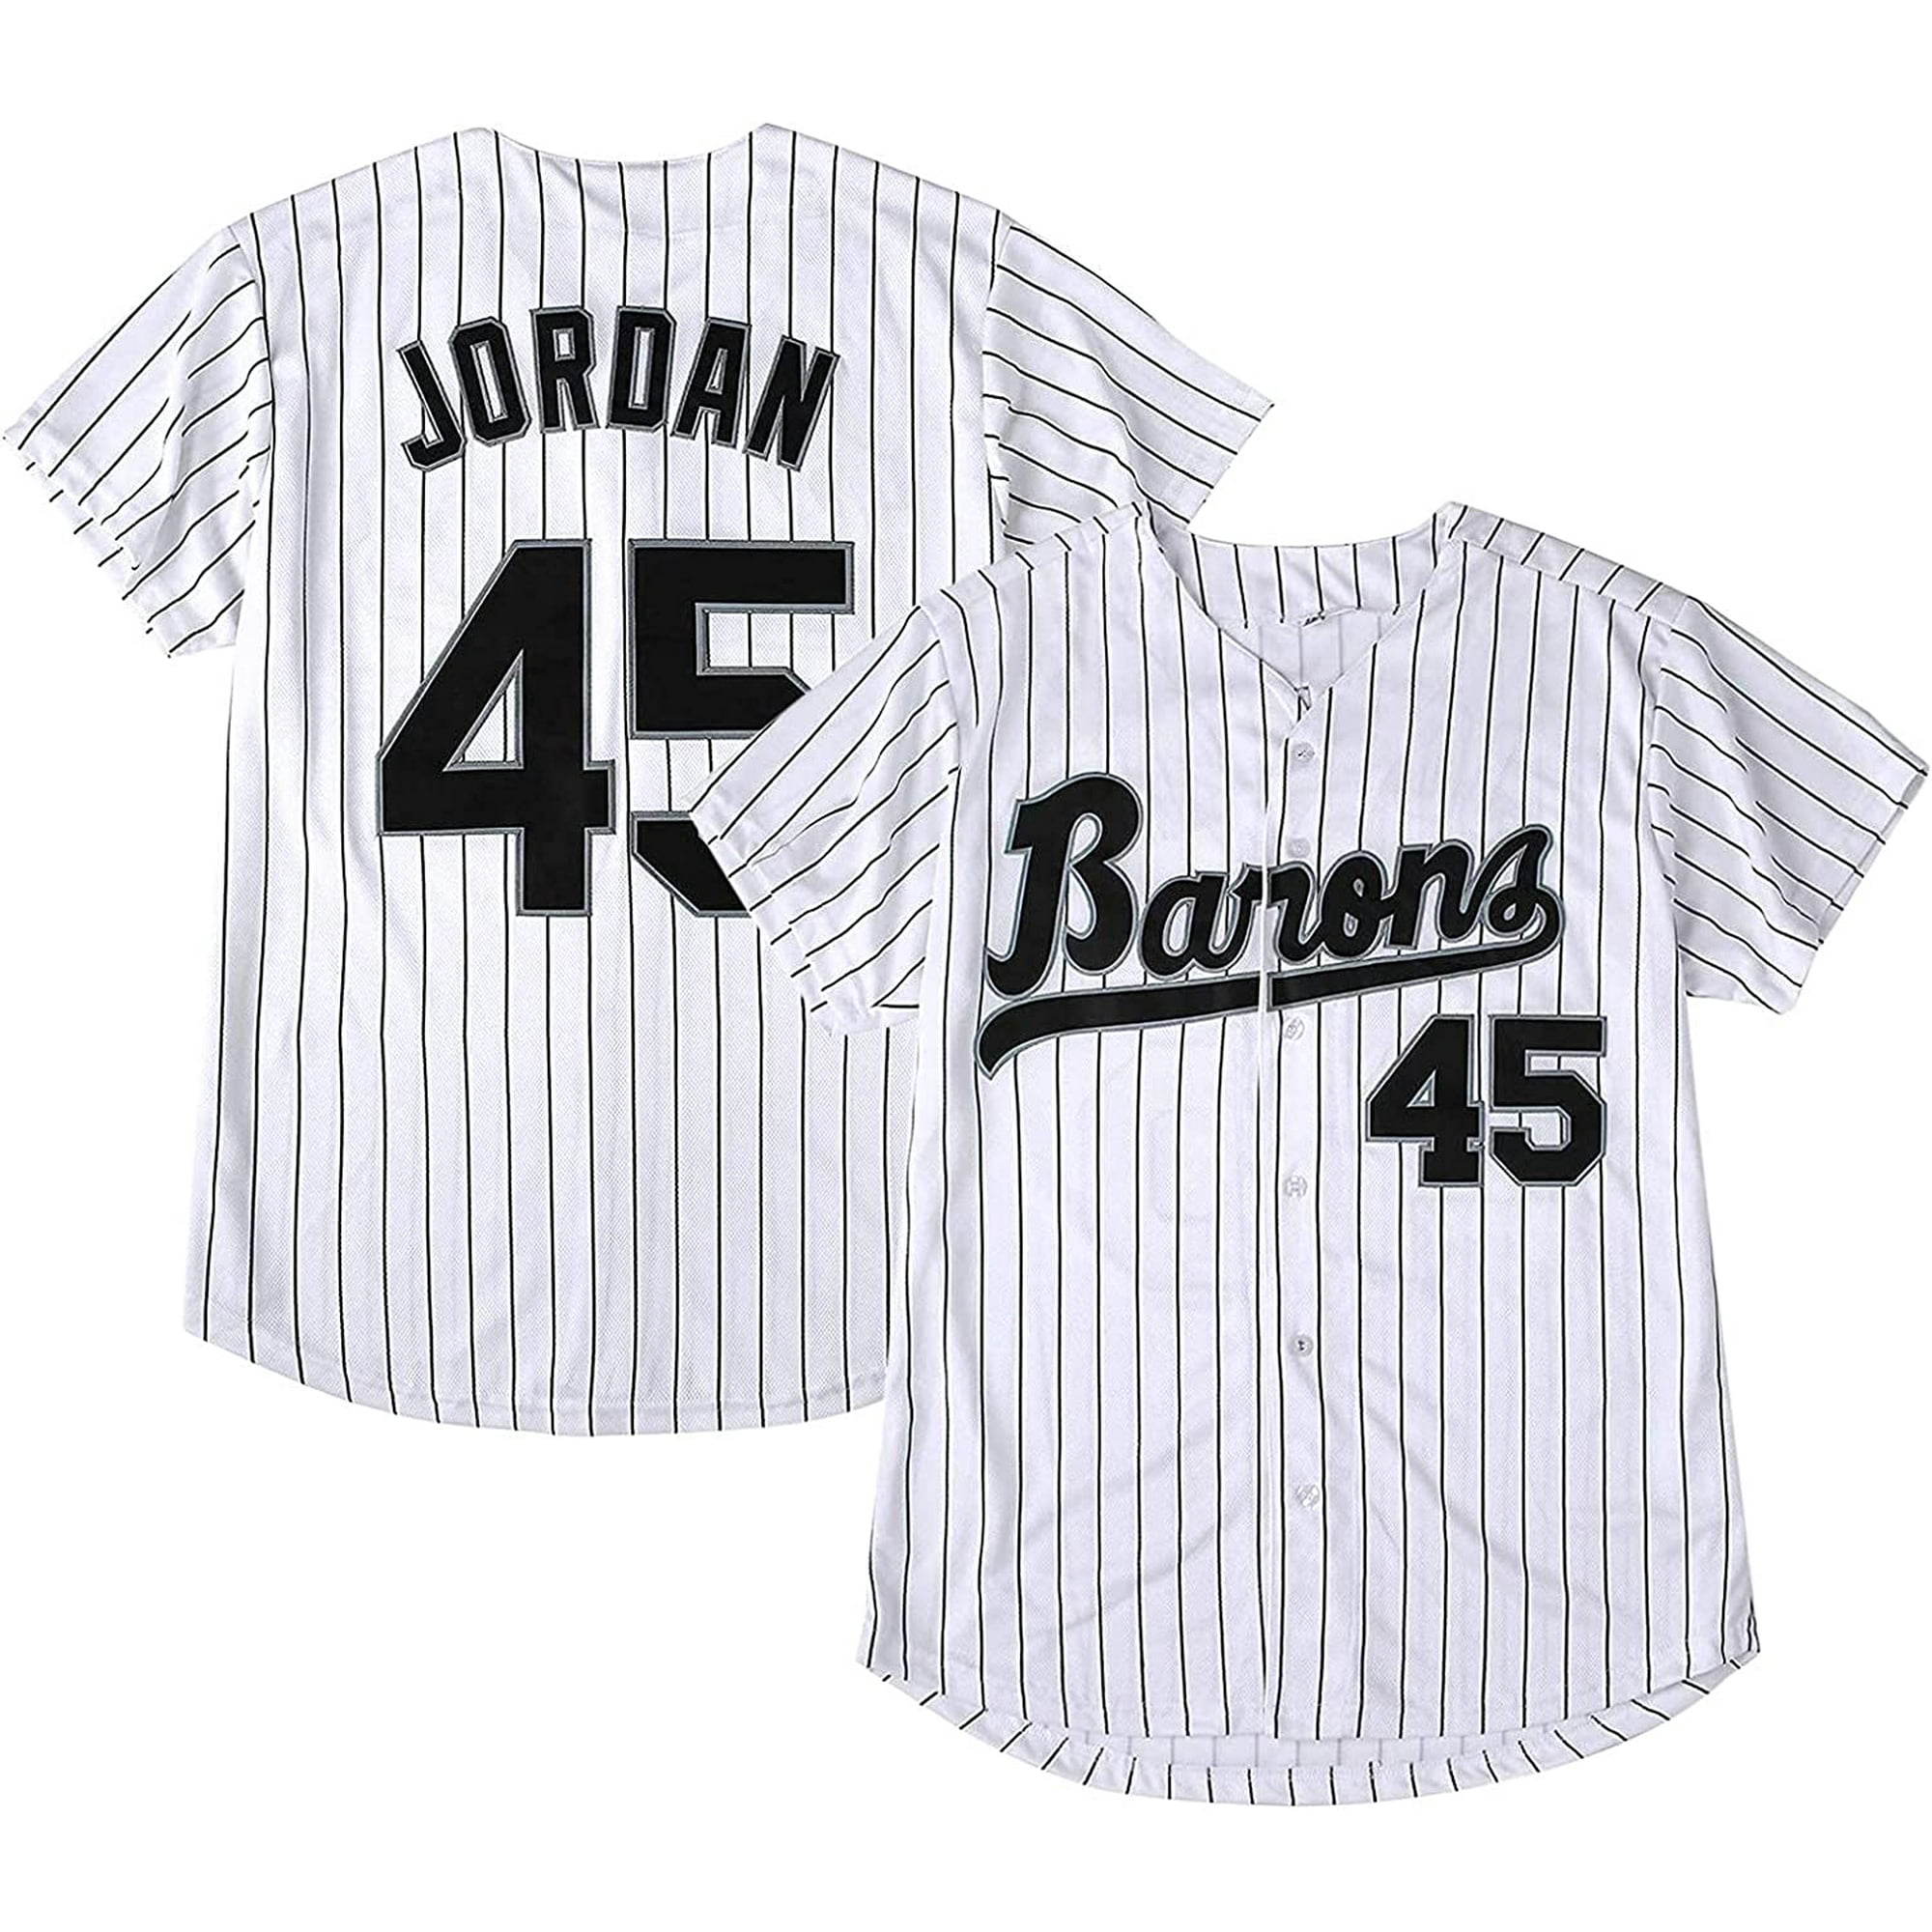 baseball jersey dress 90s